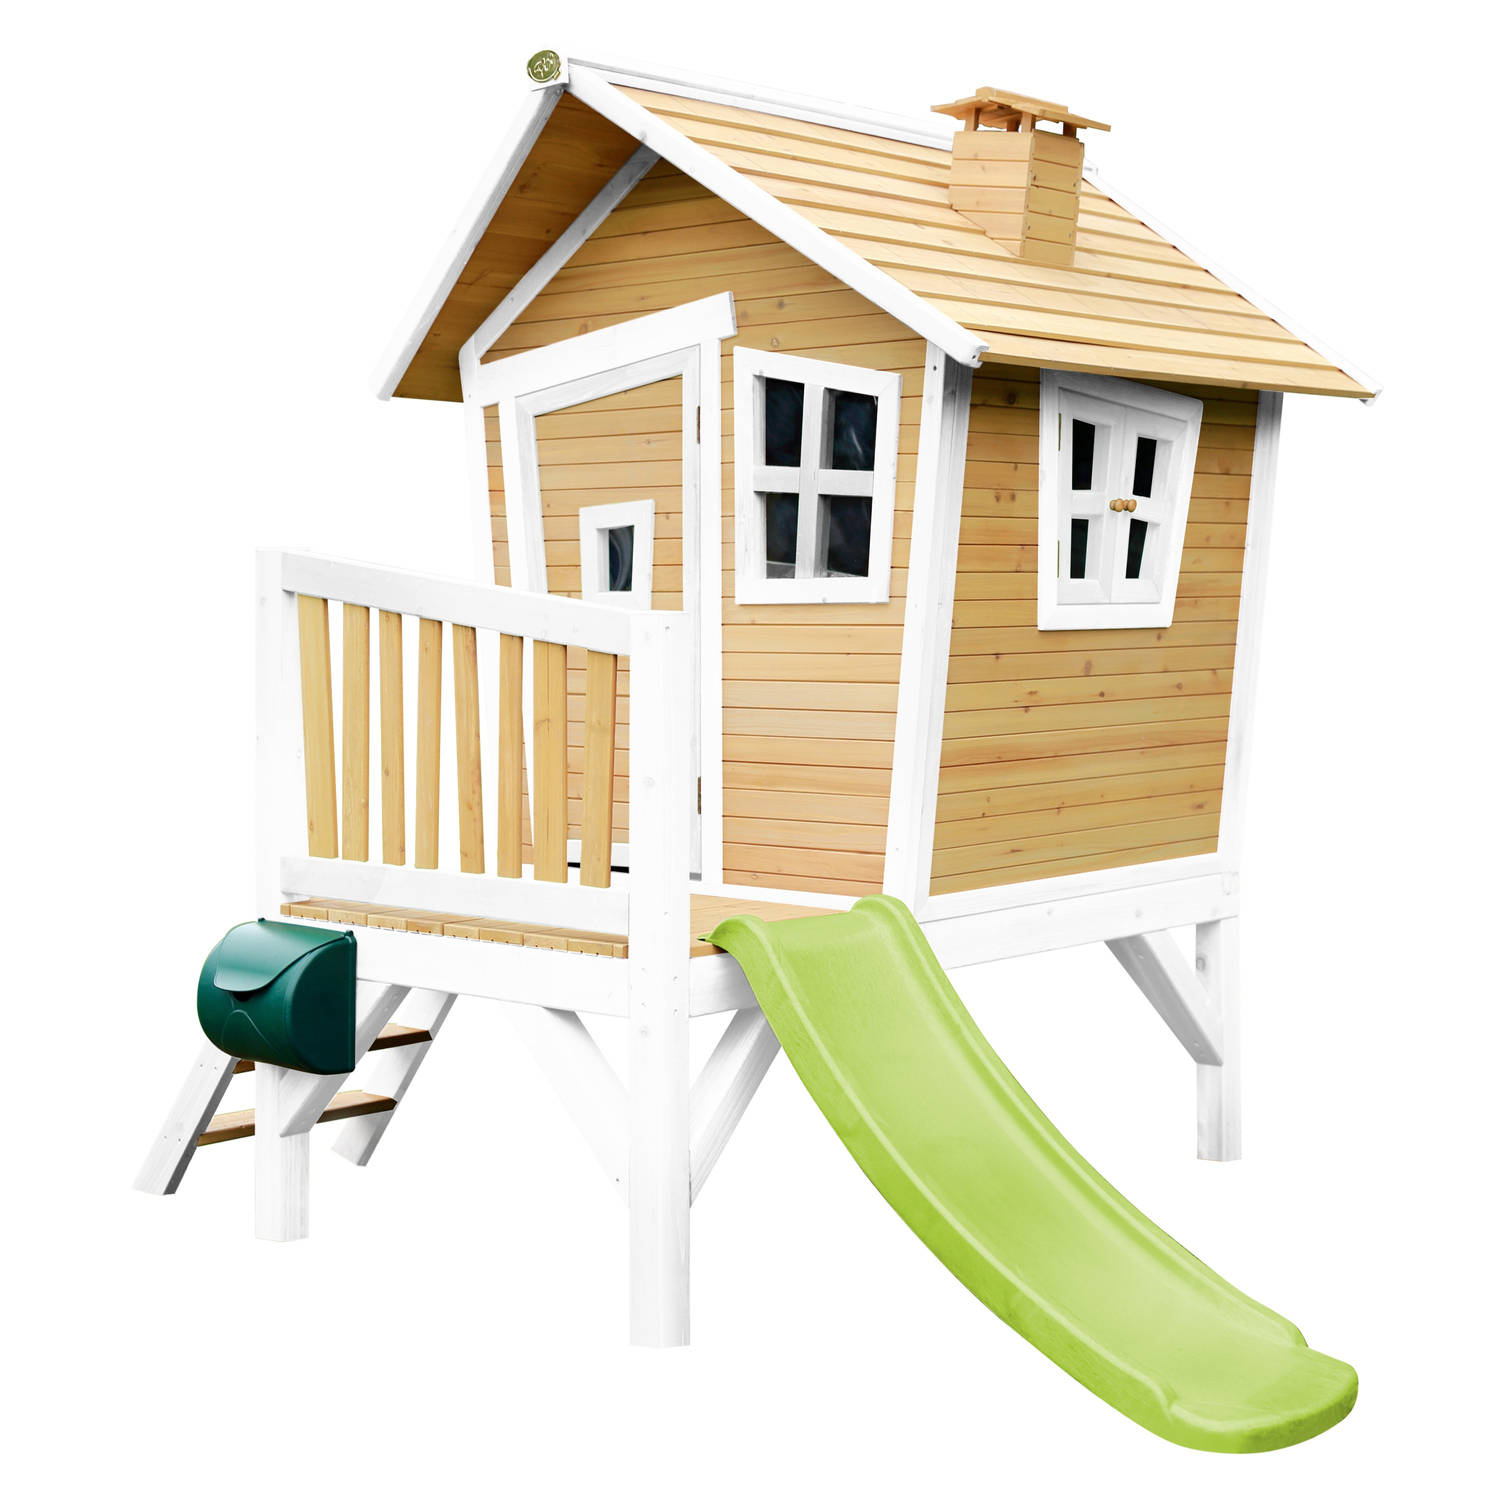 AXI Robin Speelhuis op palen & limoen groene glijbaan Speelhuisje voor de tuin / buiten in bruin & wit van FSC hout